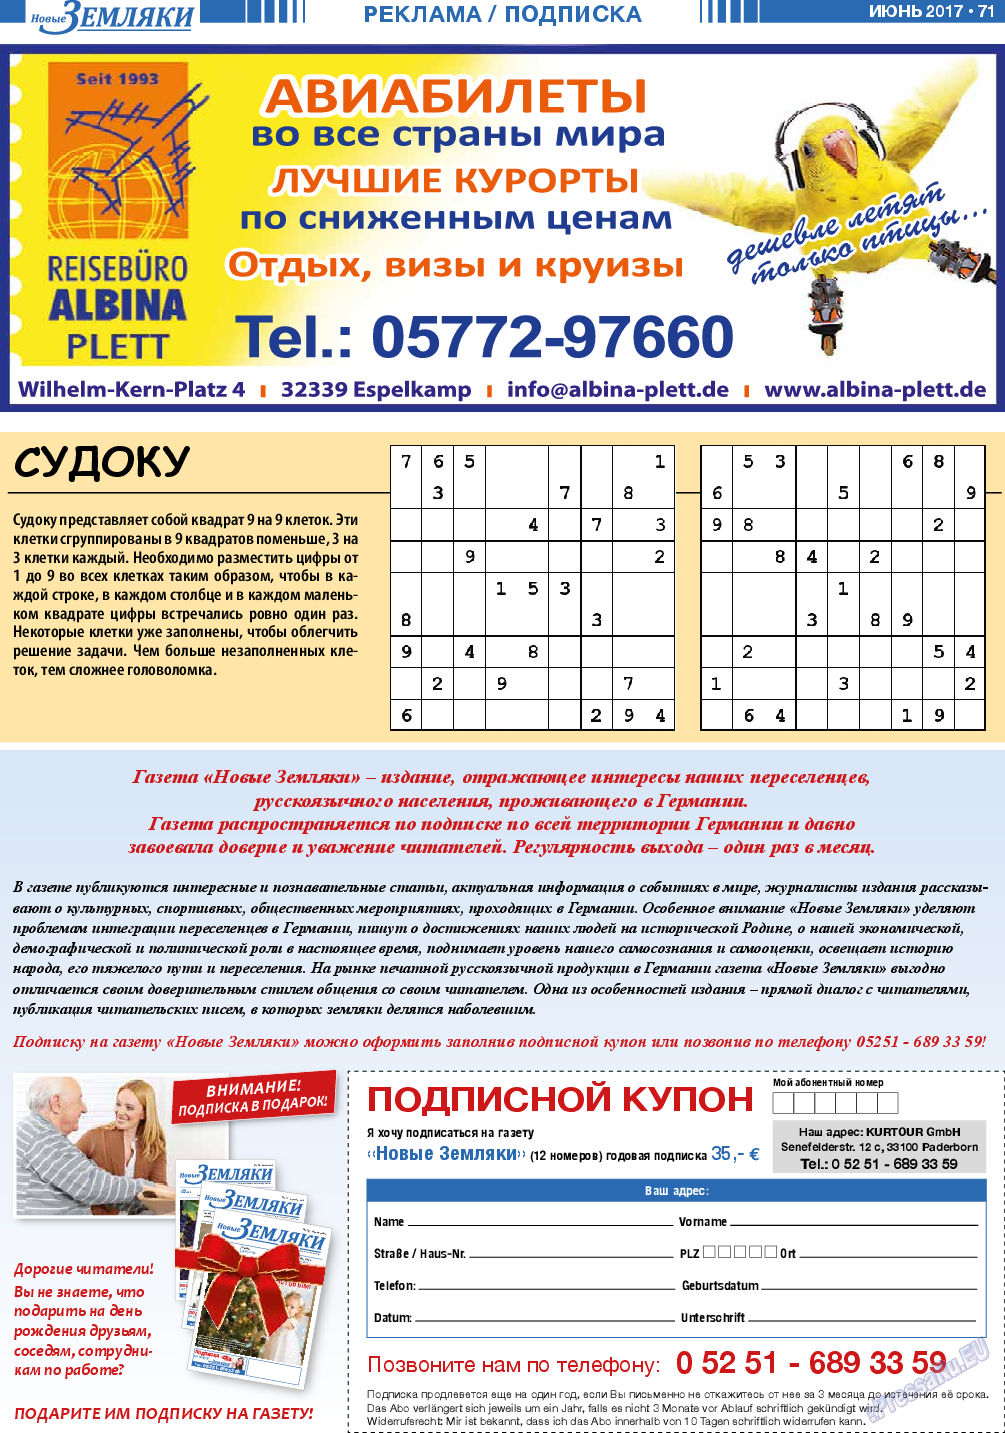 Новые Земляки, газета. 2017 №6 стр.71